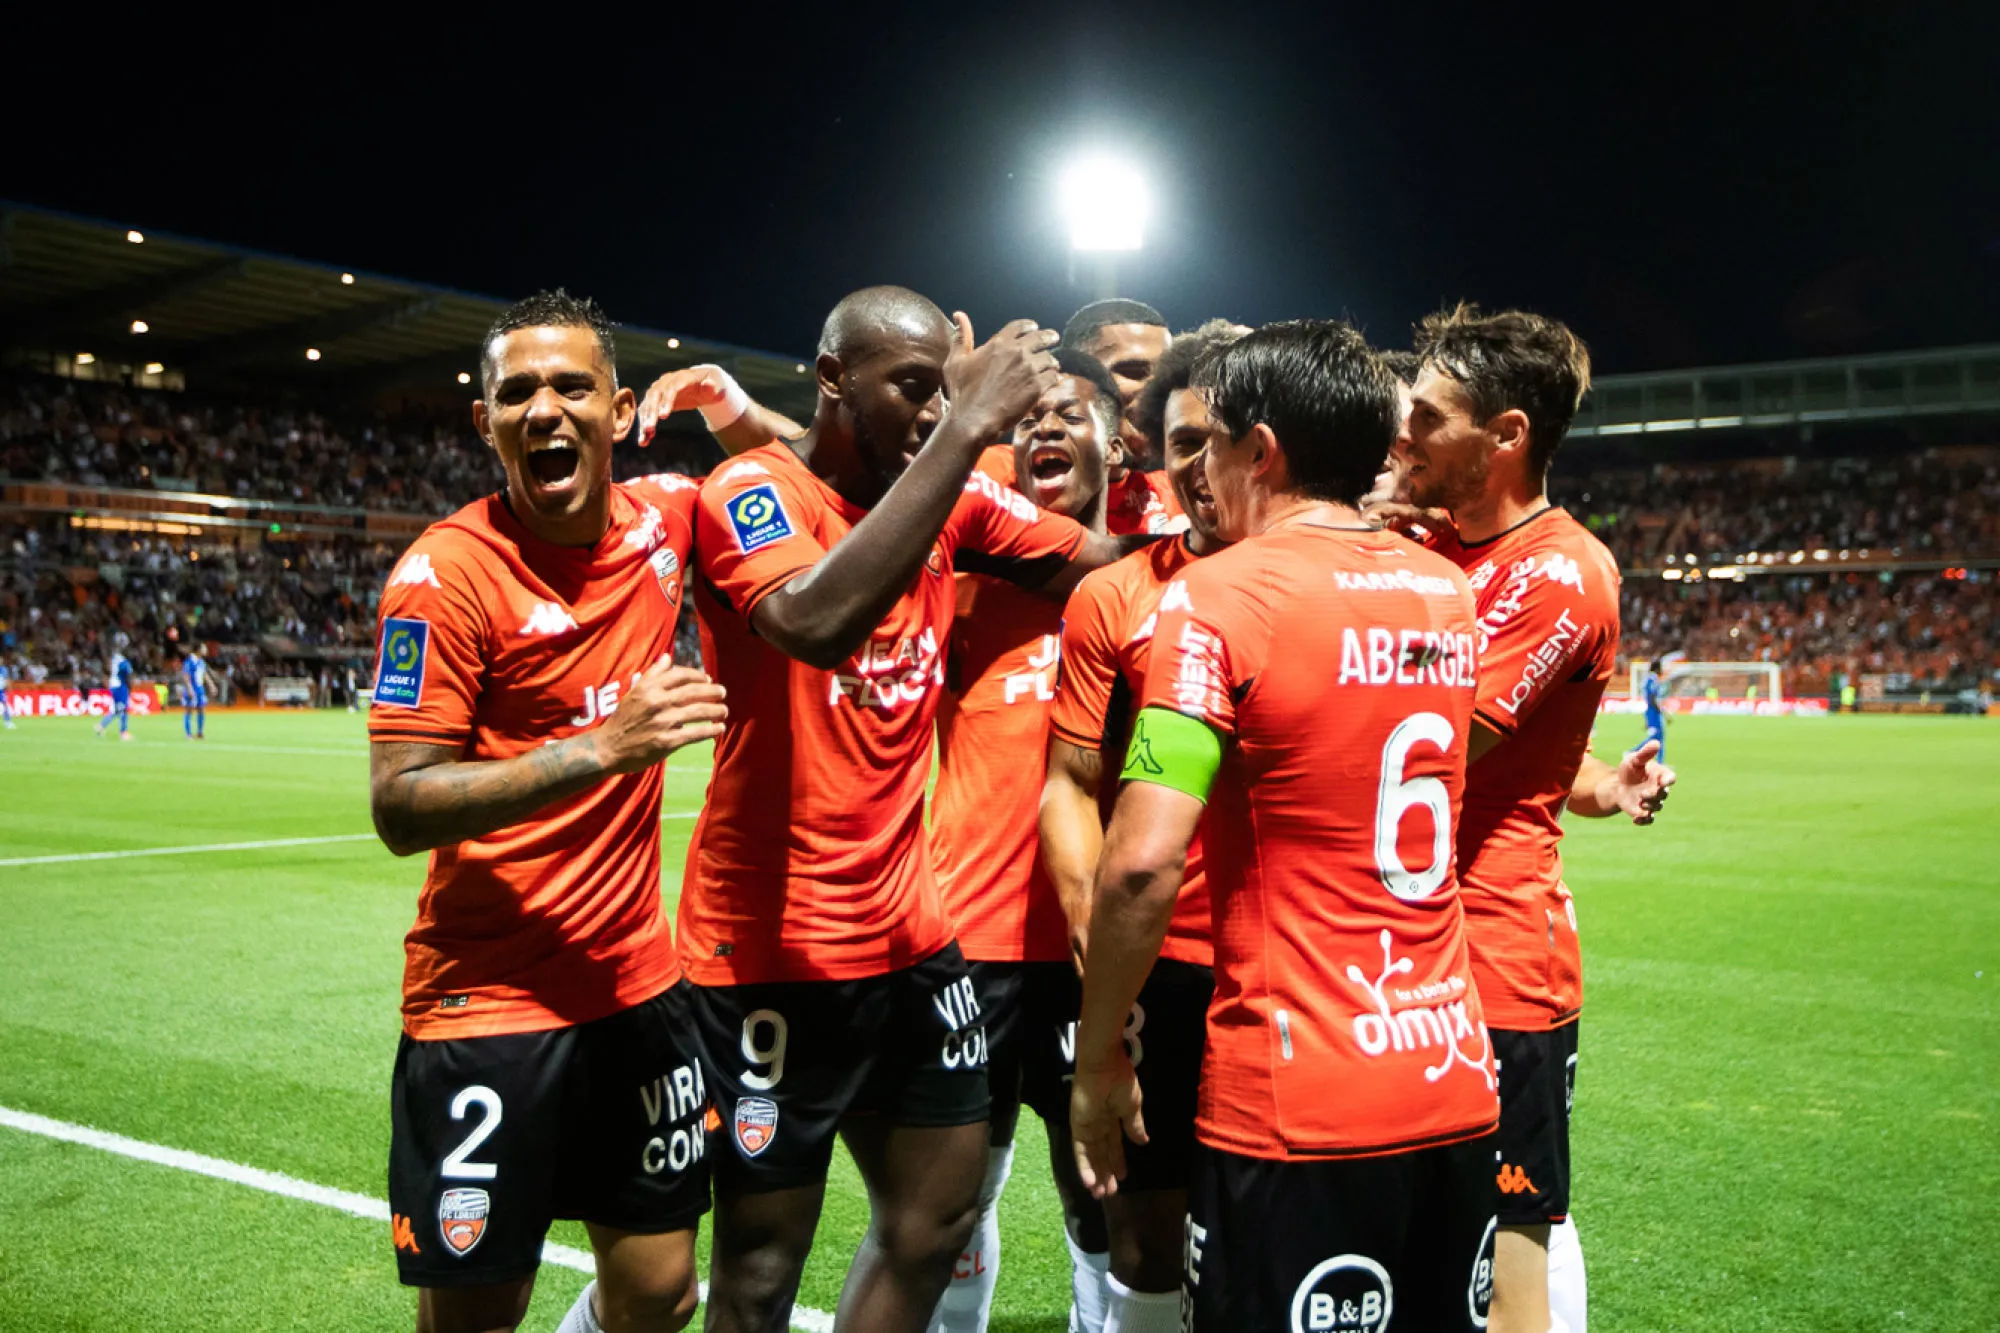 Pronostic Ajaccio Lorient : Analyse, cotes et prono du match de Ligue 1